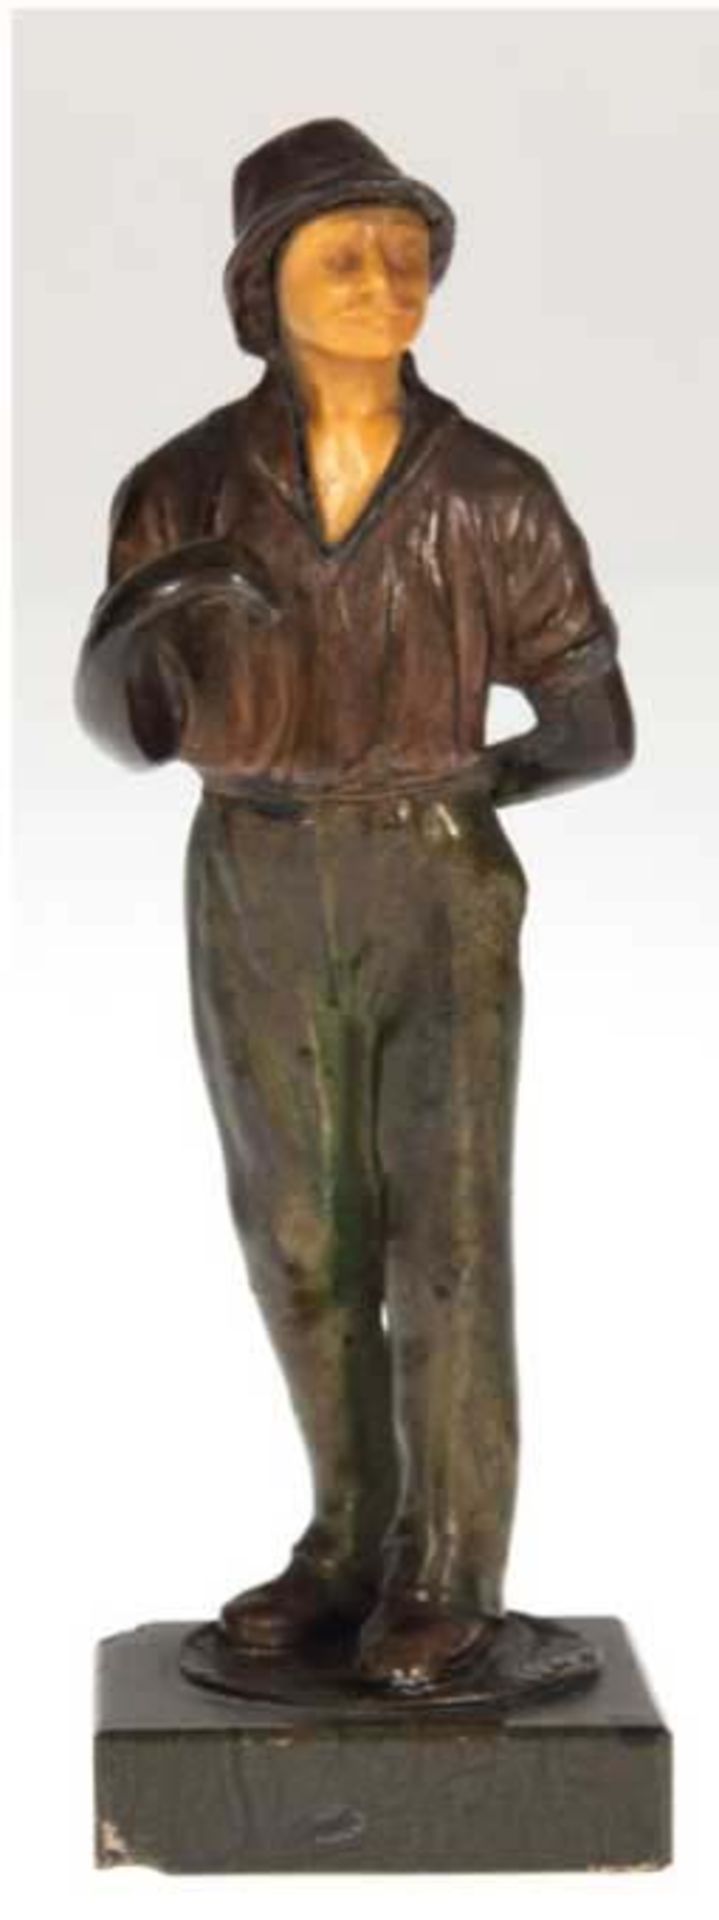 Figur "Herr mit Hut", Bronze, Gesicht aus Bein geschnitzt, Hut am Rand best., auf einem runden reli